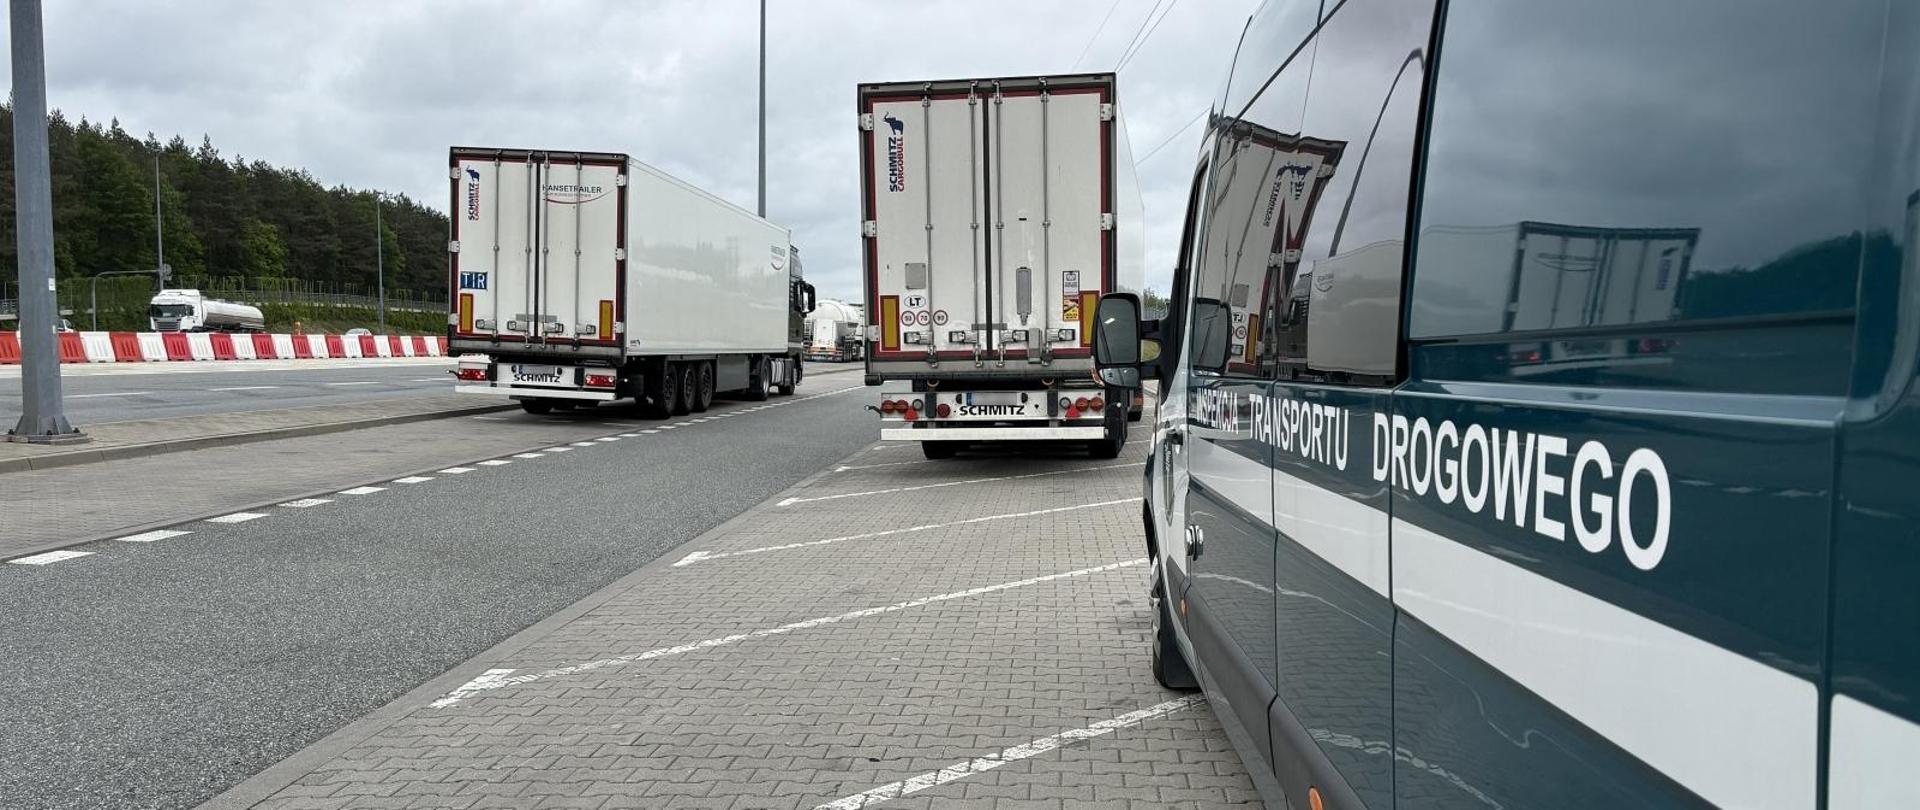 Na punkcie kontrolnym stojące 2 pojazdy ciężarowe oraz widoczny bok busa inspekcyjnego z napisem Inspekcja Transportu Drogowego 